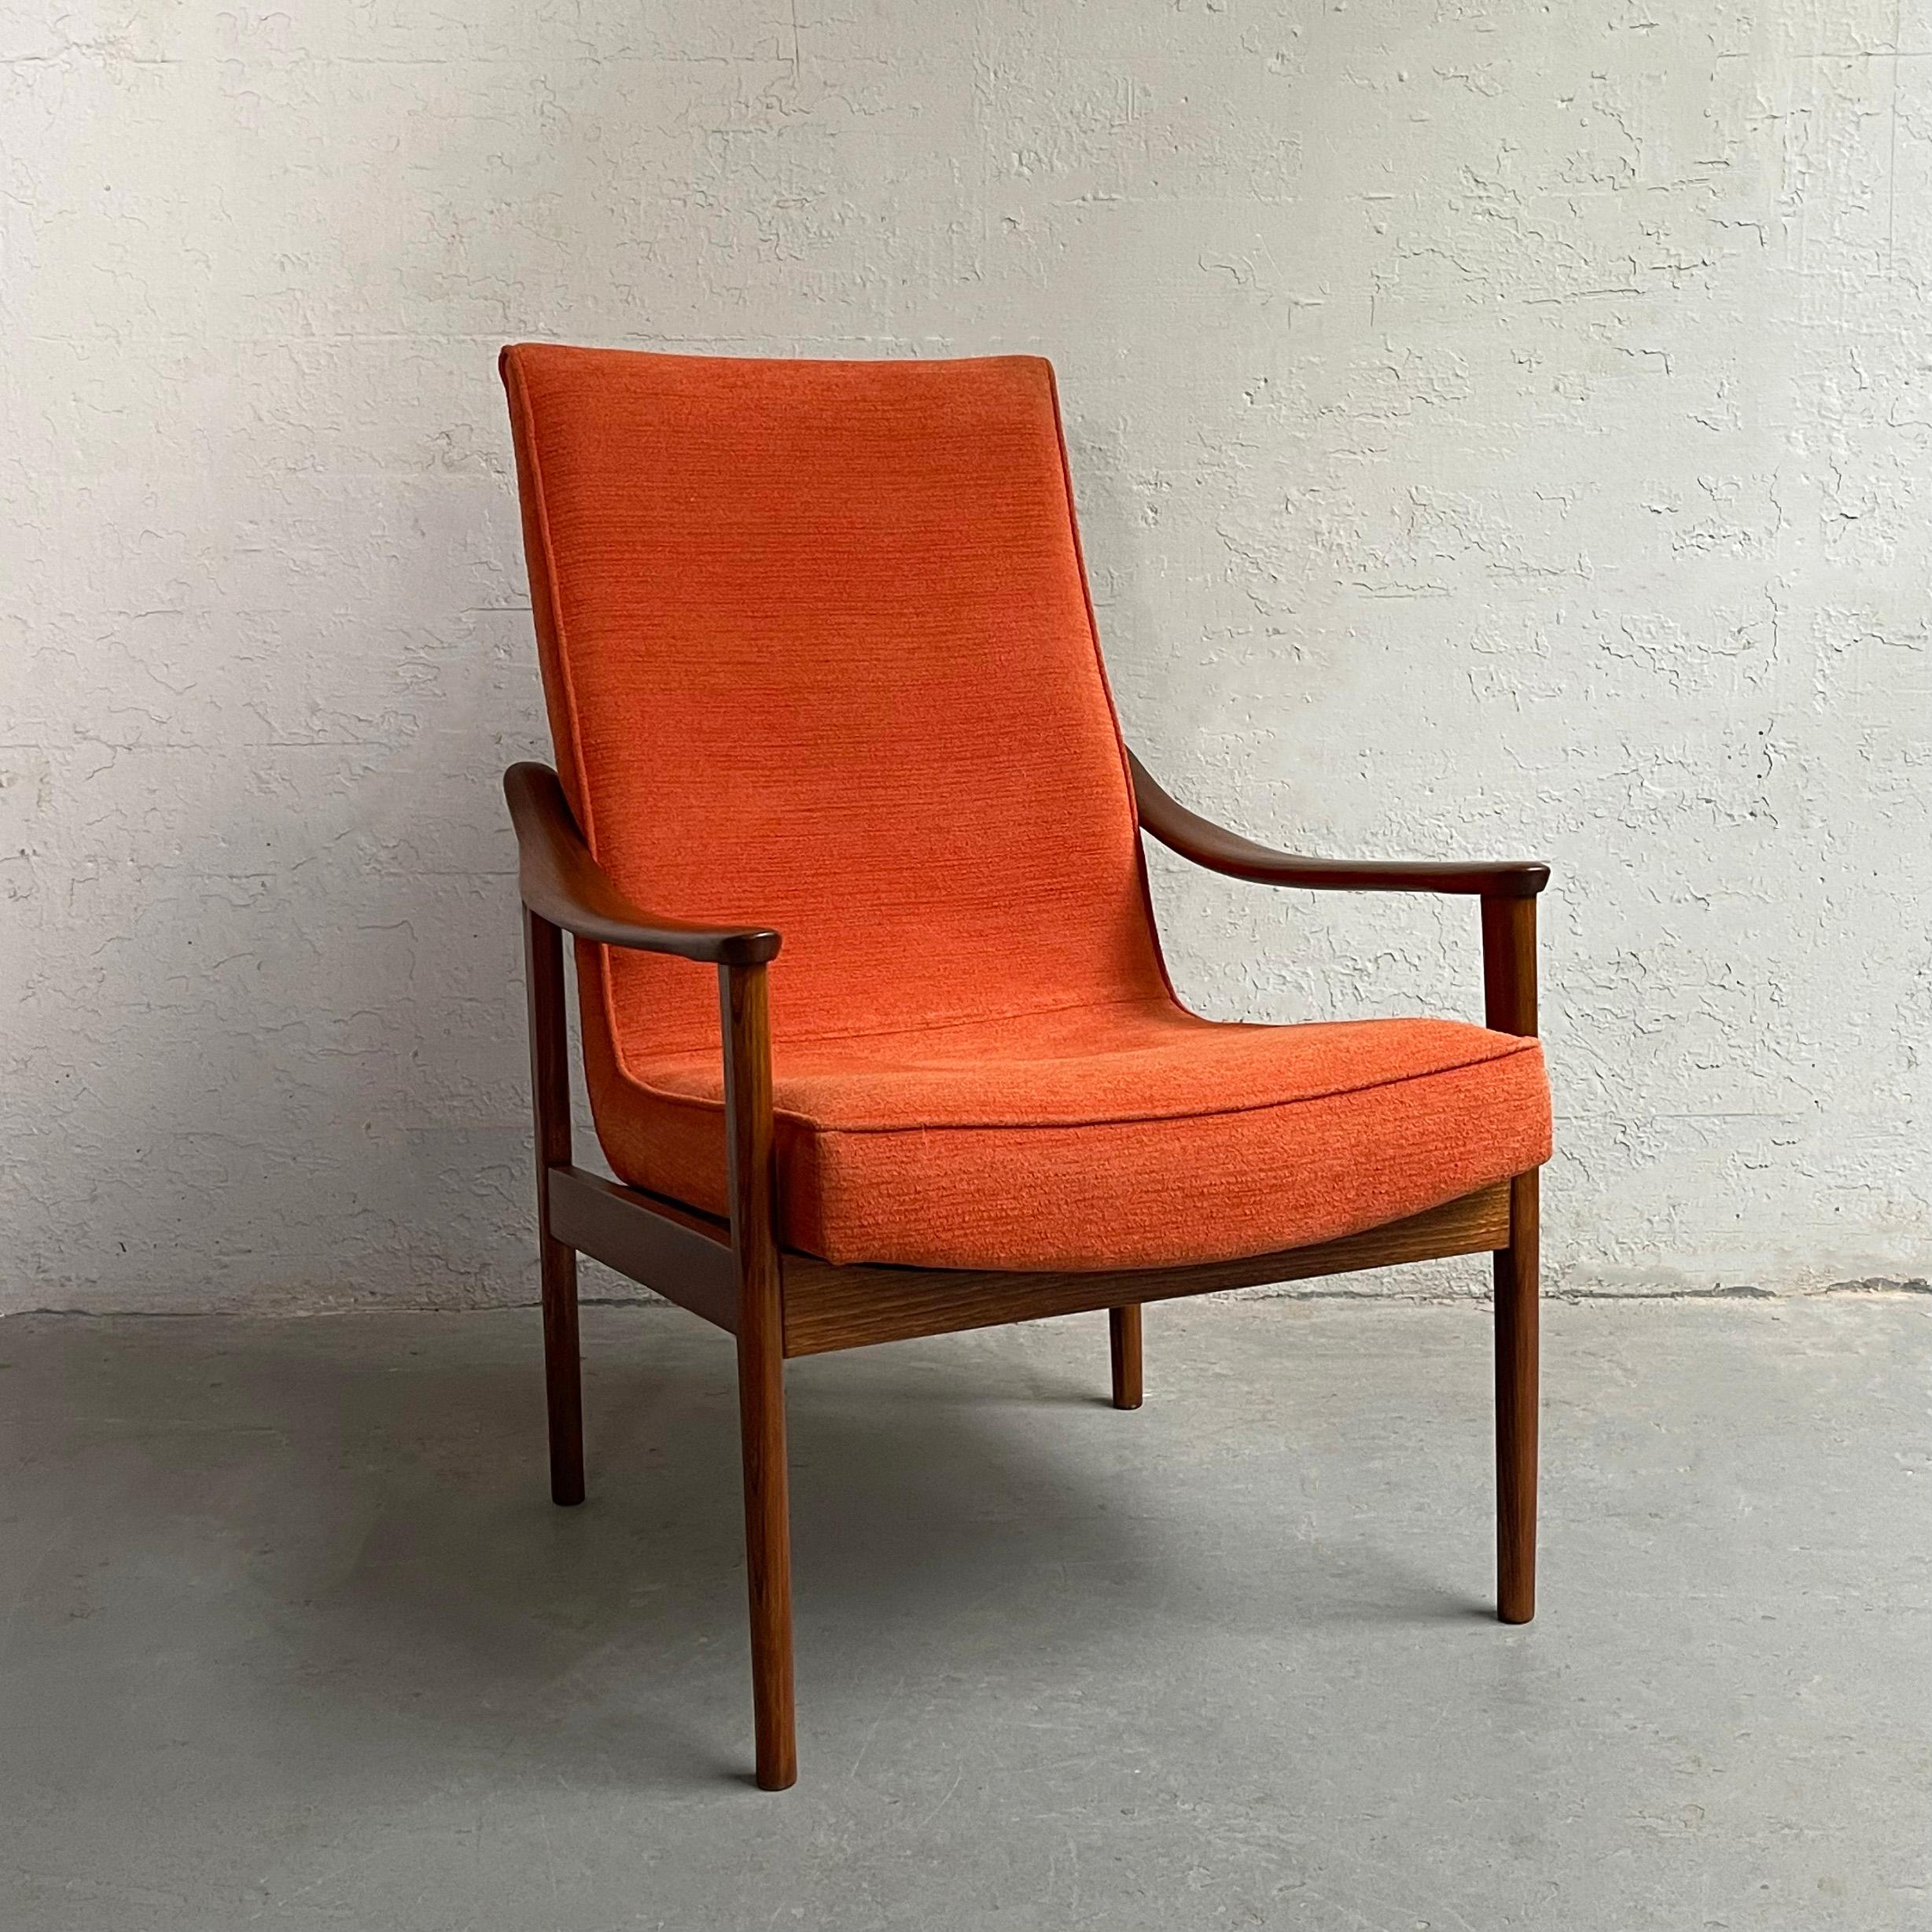 Der in Jugoslawien hergestellte Loungesessel im skandinavisch-modernen Stil verfügt über ein minimalistisches Buchengestell mit hoher Rückenlehne und einem mit rostfarbener Chenille gepolsterten Sitz.

 